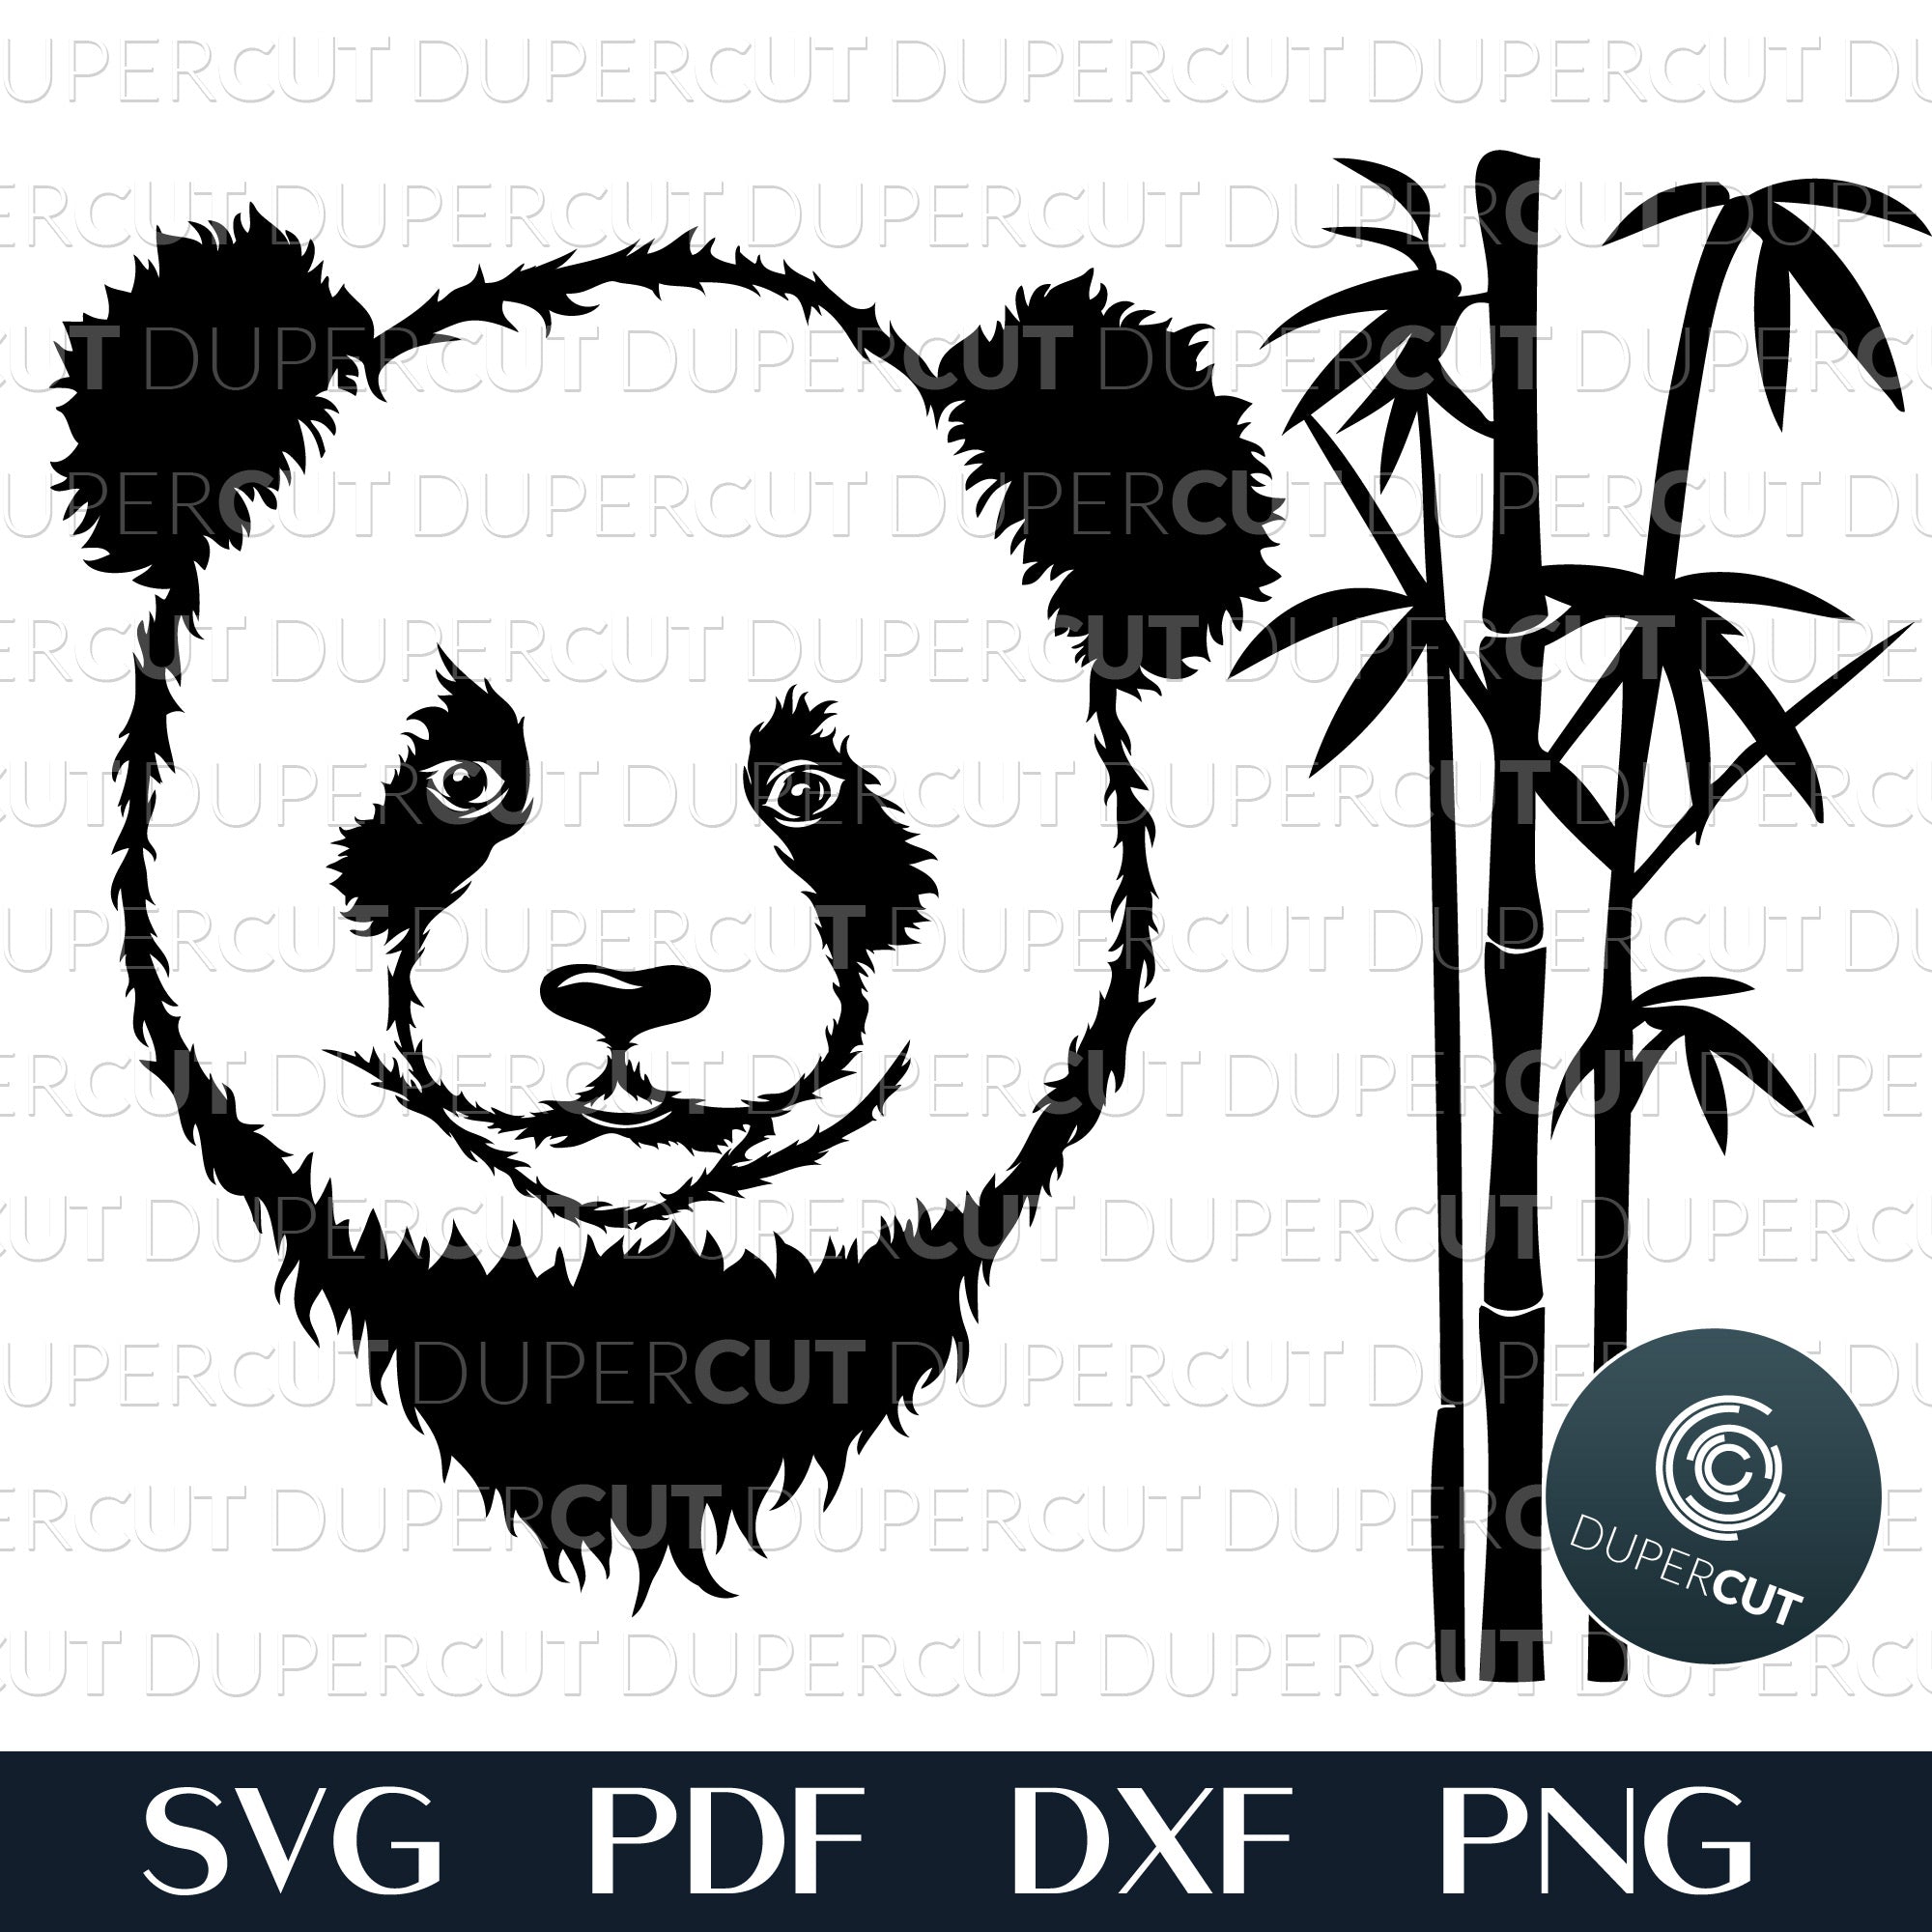 Panda in Bamboo Lamp - Laser Cut File